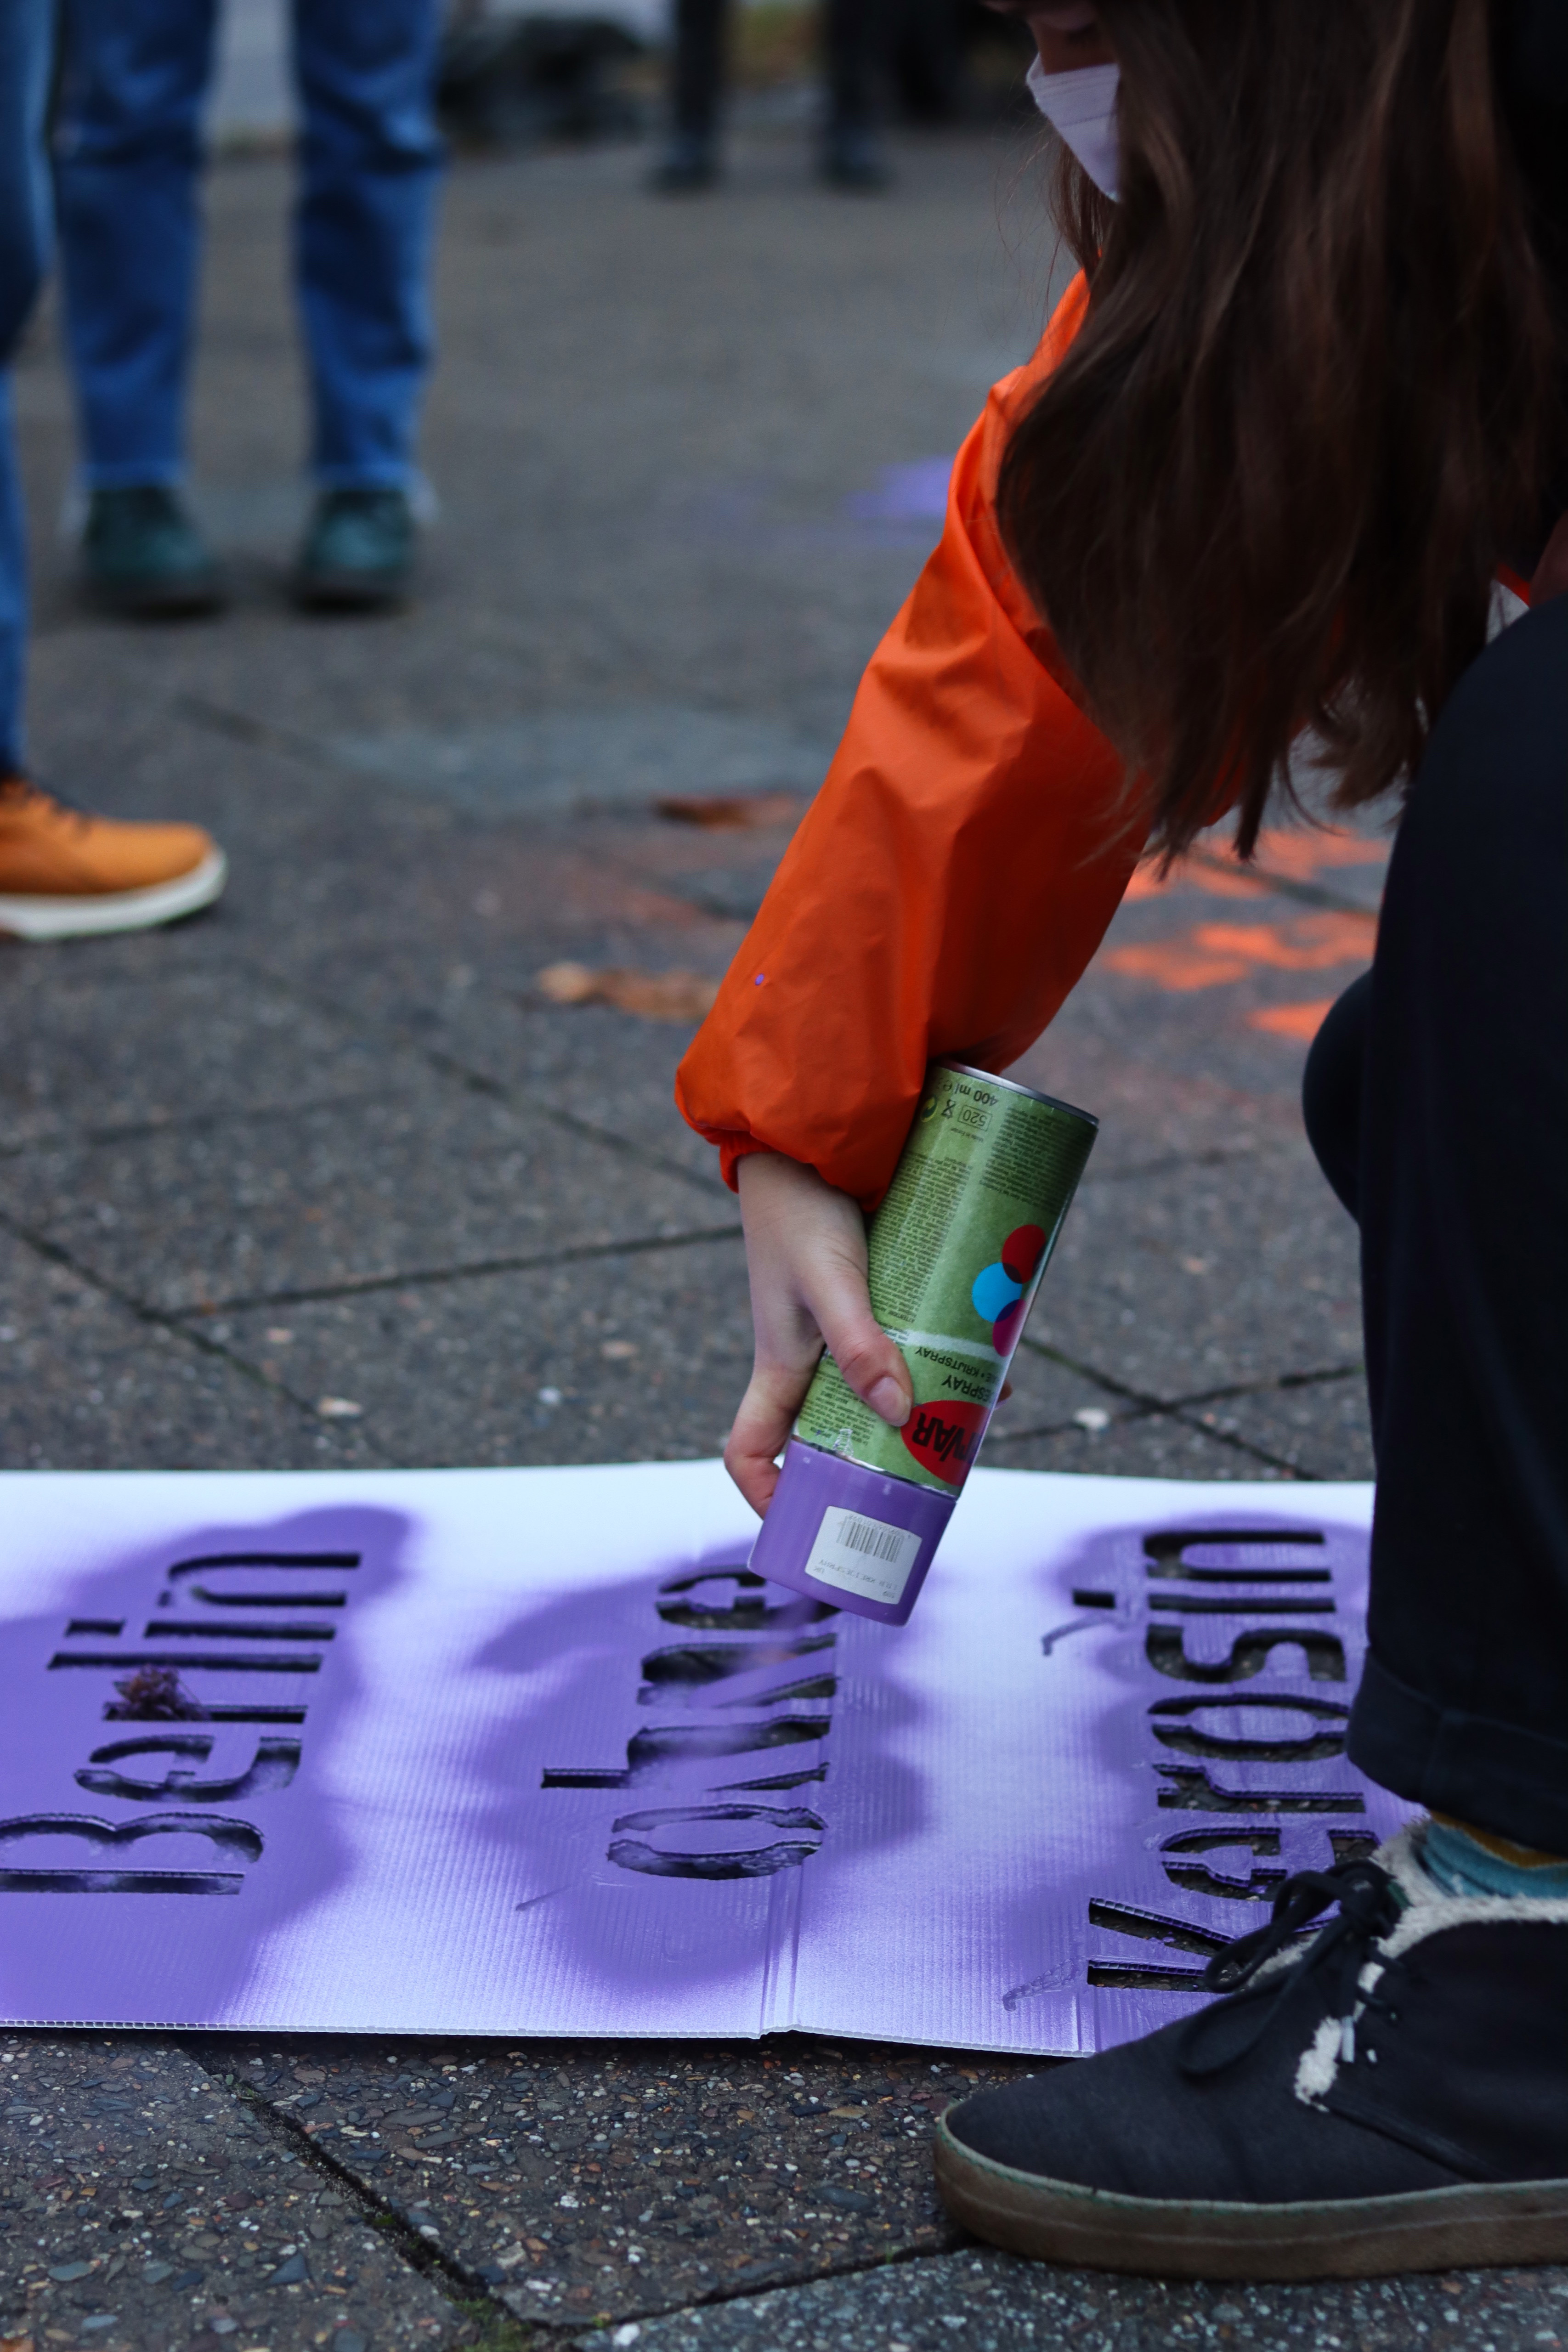 Eine Attac-Aktivistin sprüht Sprühkreide durch eine Schablone auf der "Berlin ohne Kerosin" steht